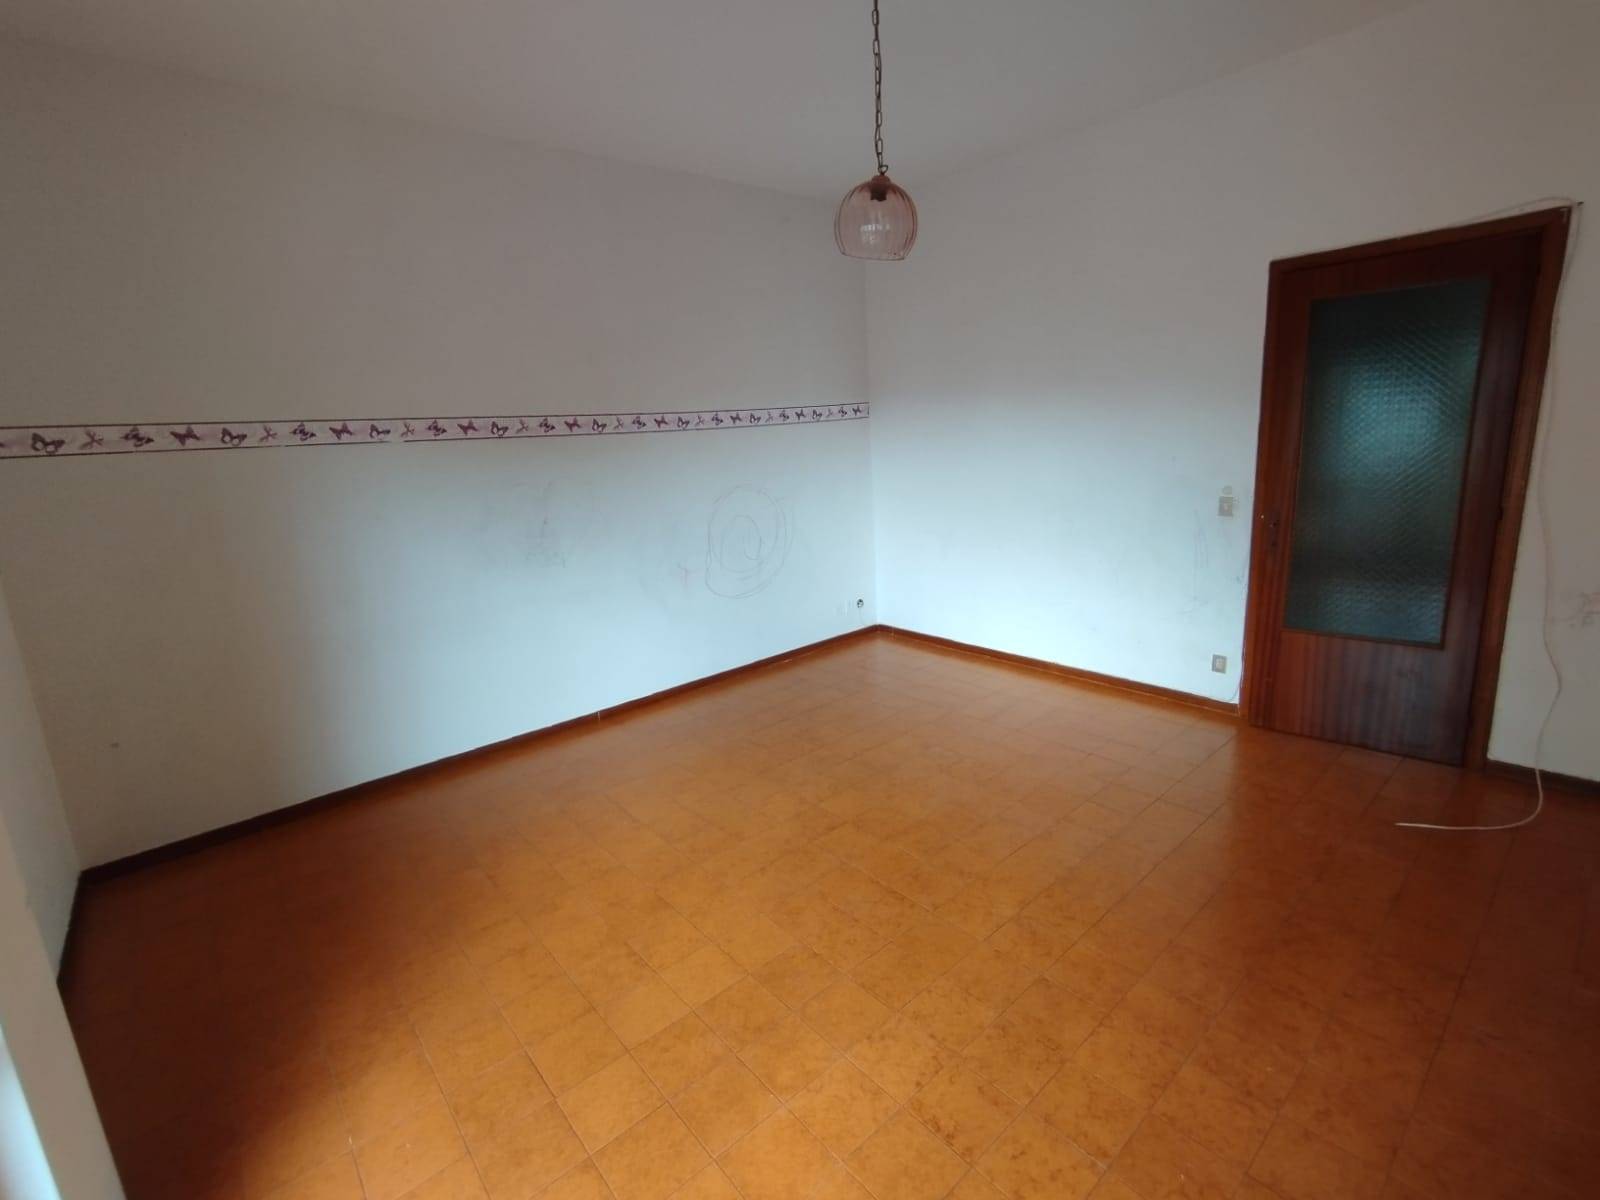 Appartamento in vendita a Castelbellino, 5 locali, zona elbellino Stazione, prezzo € 75.000 | PortaleAgenzieImmobiliari.it